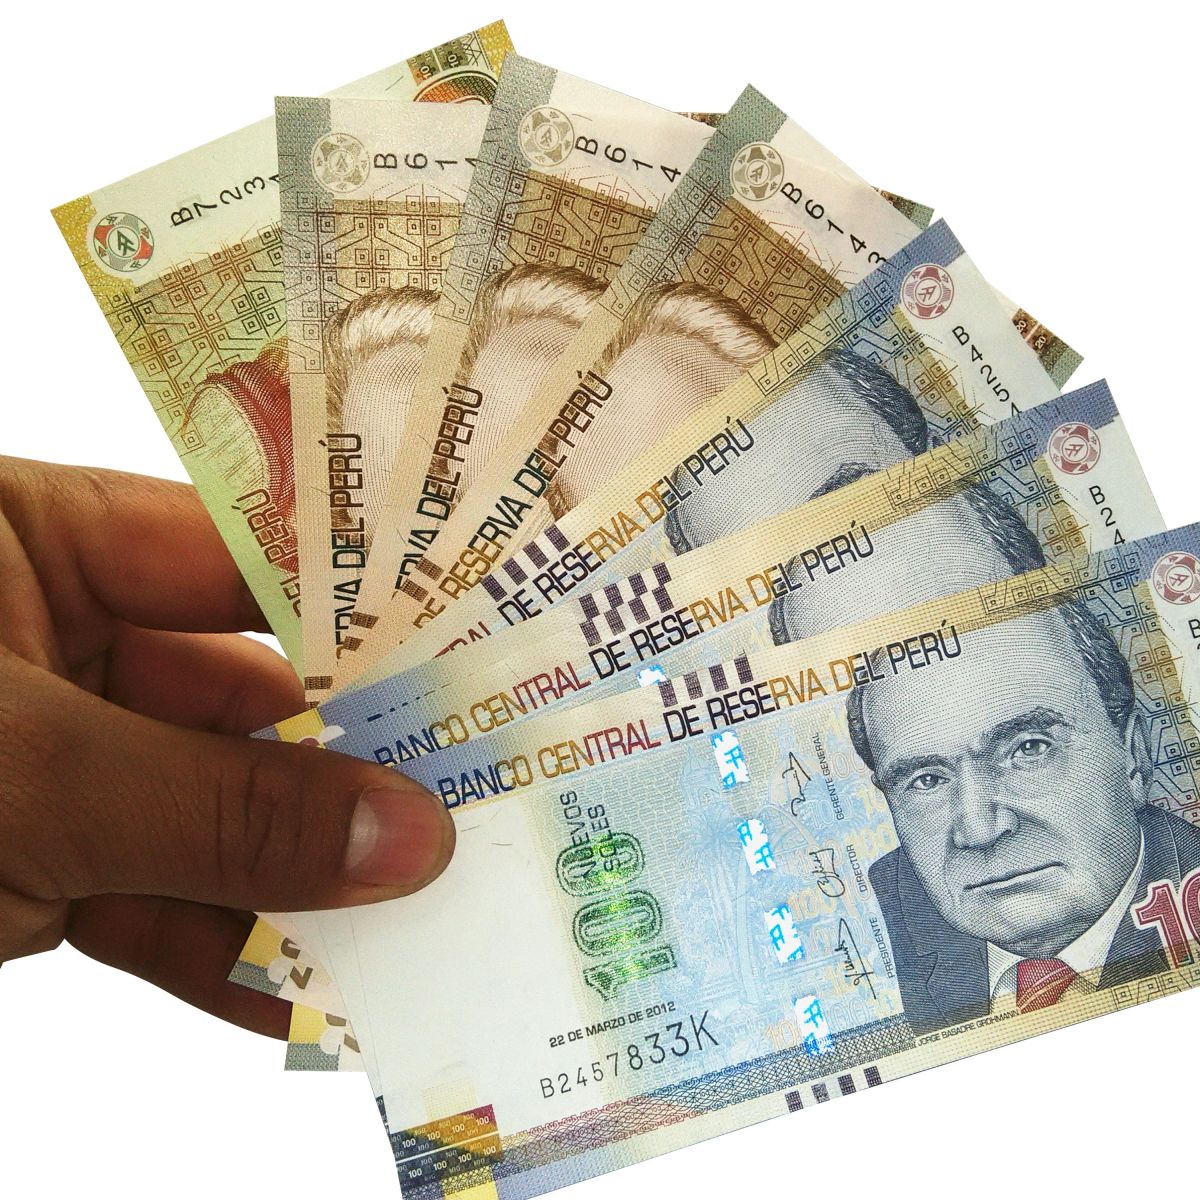 Peru nuevo soles money banknotes held in hand